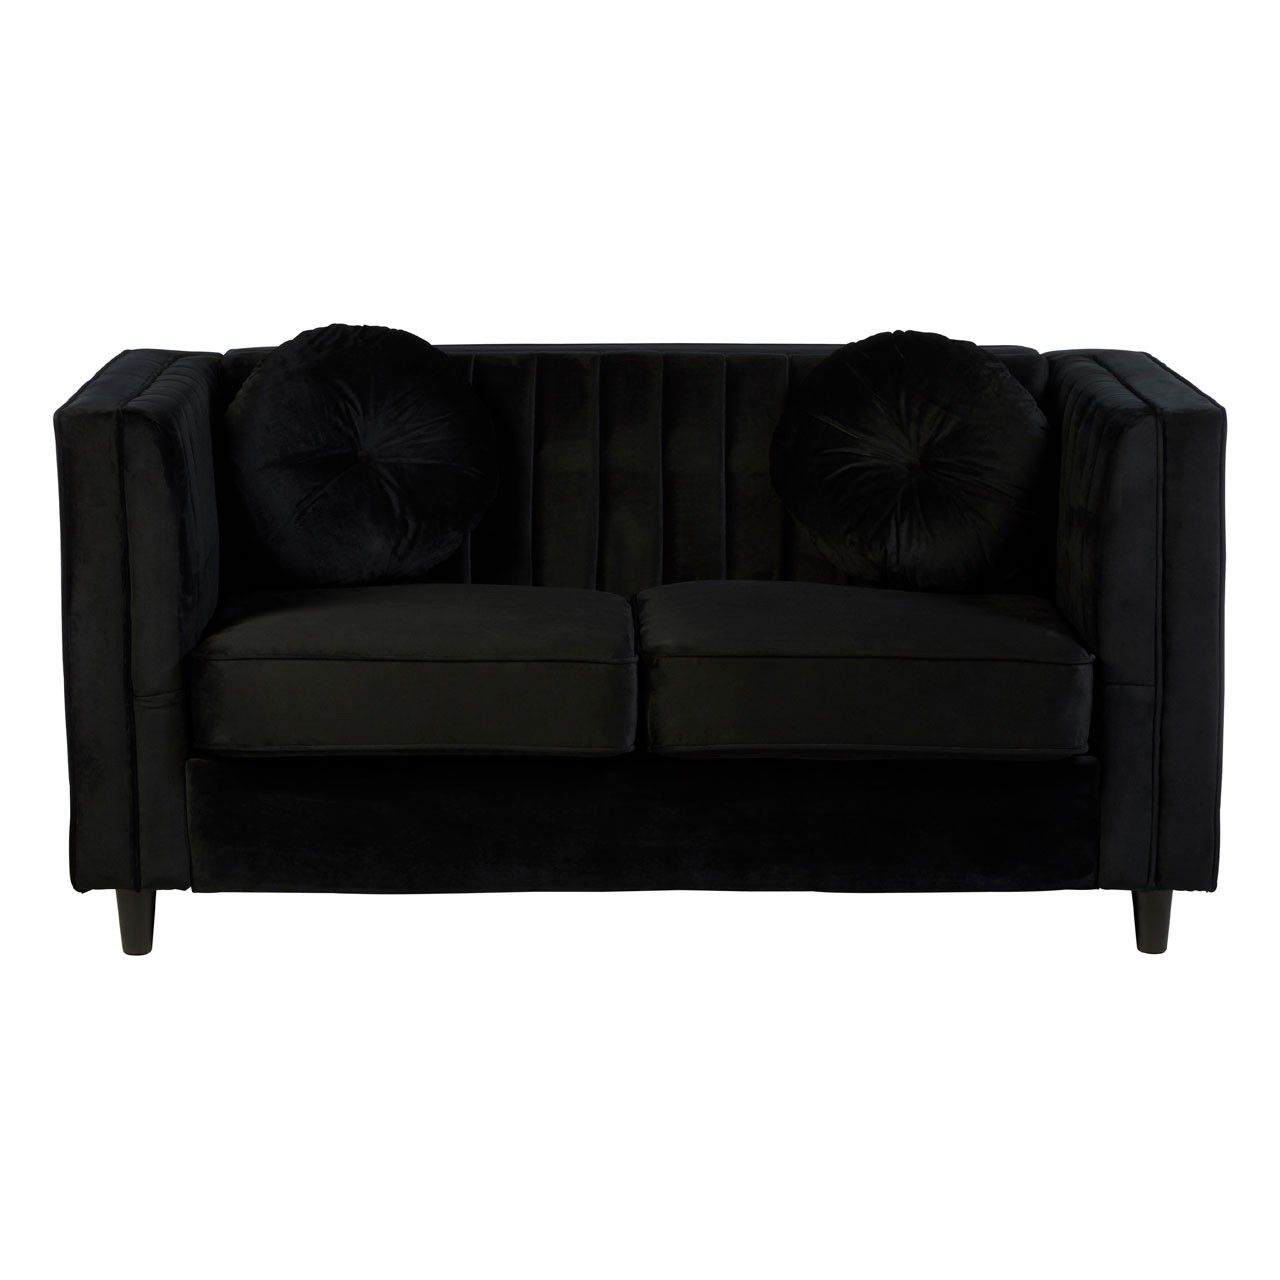 Farah 2 Seat Black Velvet Sofa For Black Velvet Sofas (View 10 of 15)